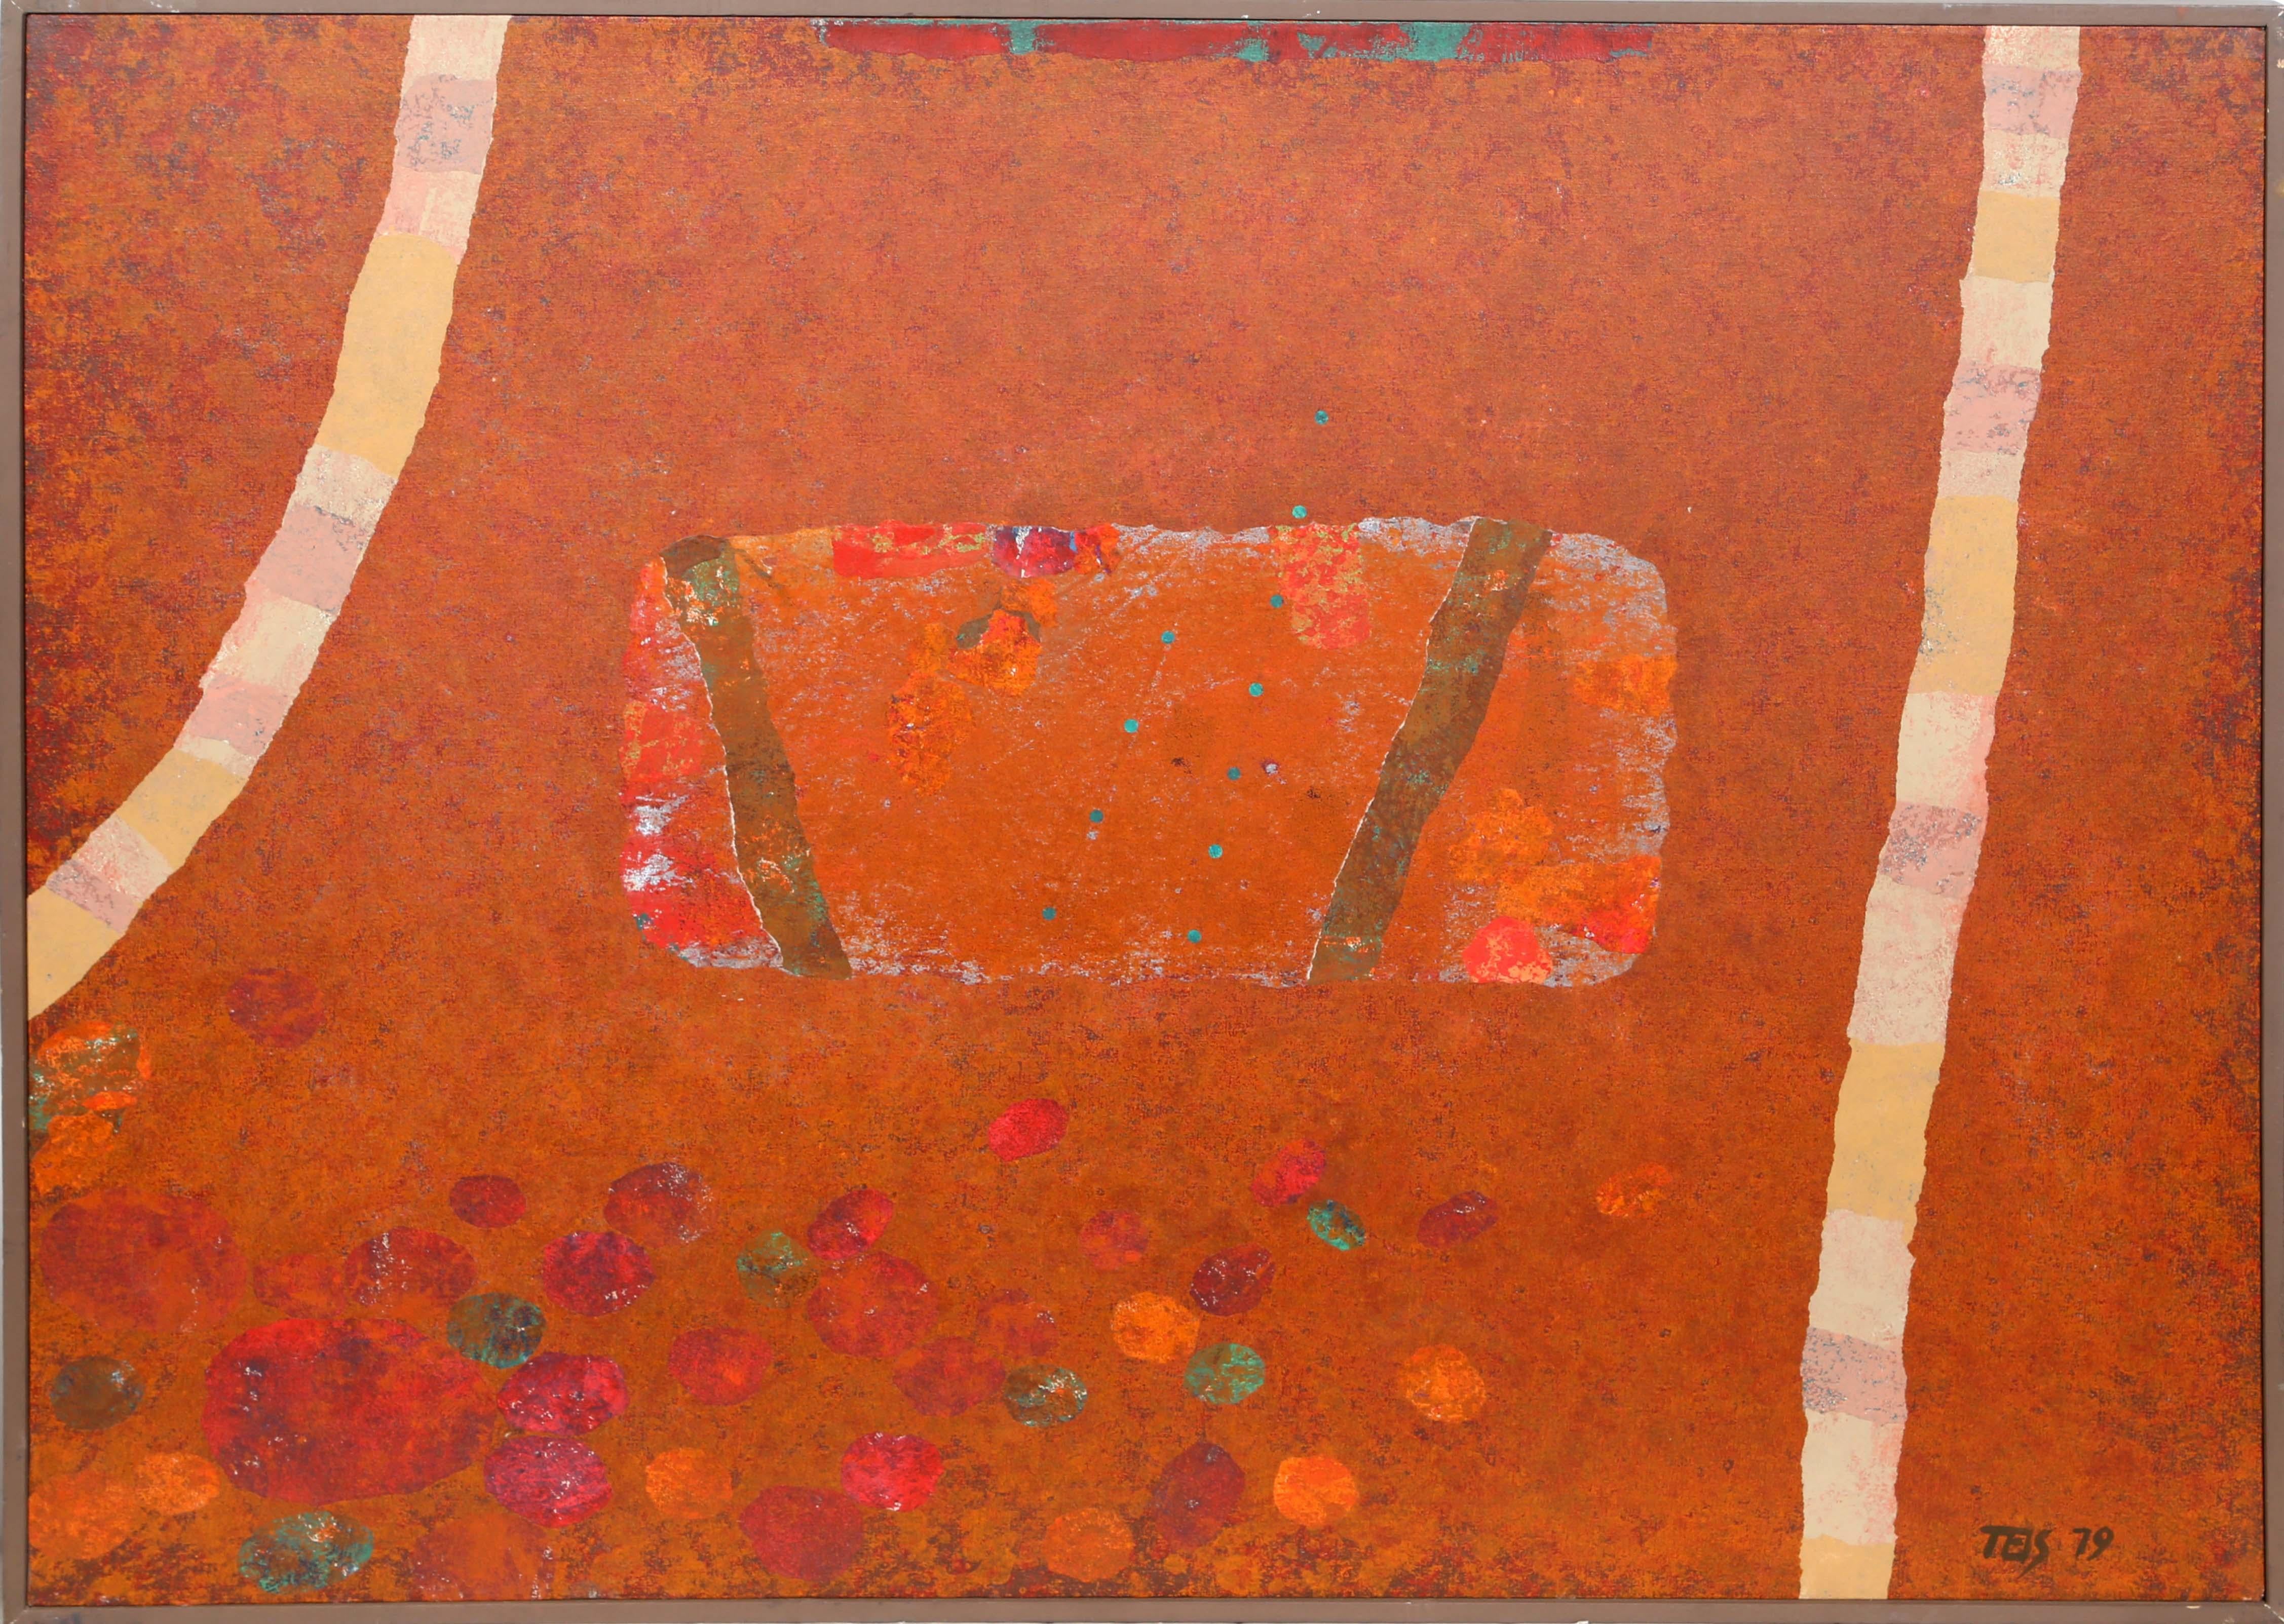 Artiste : Dan Teis, américain (1925 - 2002)
Titre : Résumé de l'orange
Année : 1979
Moyen : Acrylique et collage sur toile, signé et daté à droite.
Taille : 36 in. x 48 in. (91,44 cm x 121,92 cm)
Taille du cadre : 37 x 49 pouces